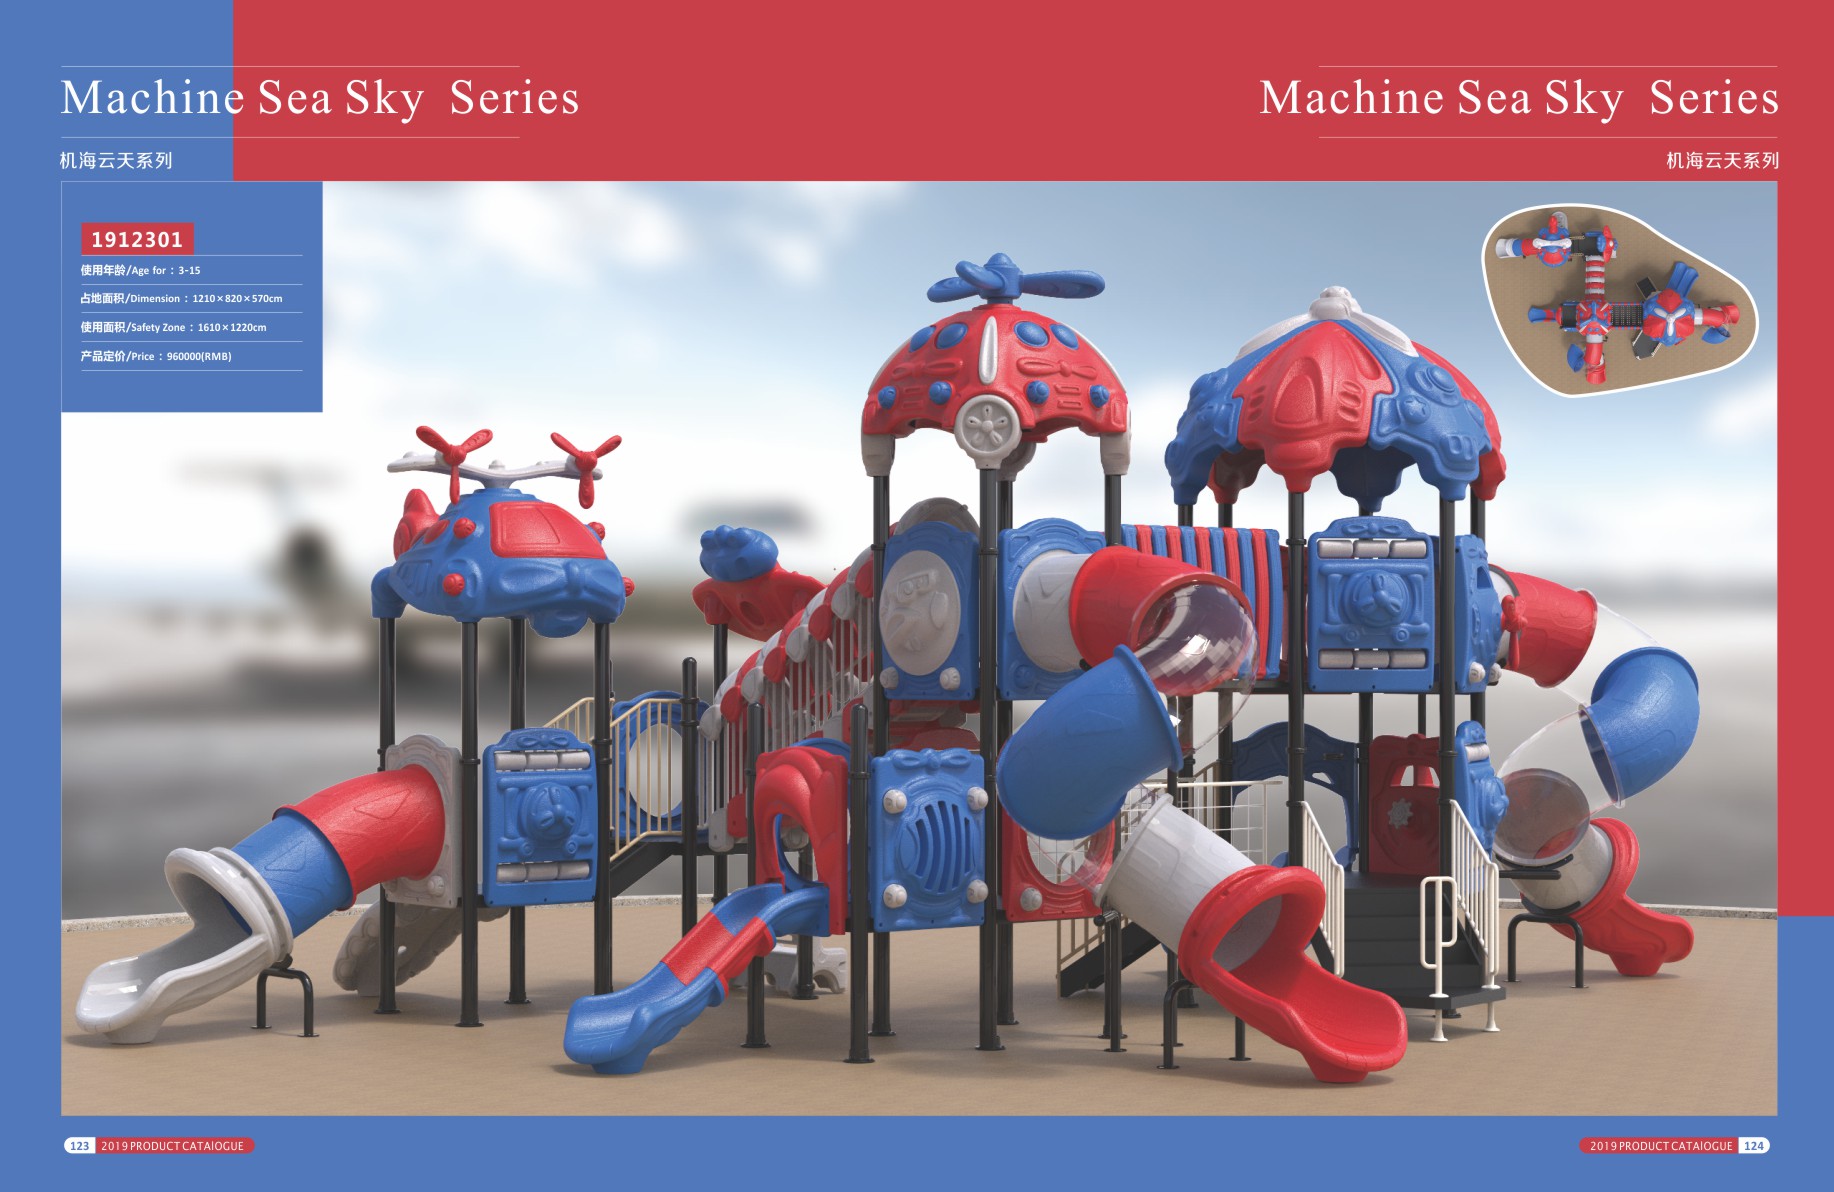 机海云天系列大型组合滑梯儿童游乐场设备-1912301